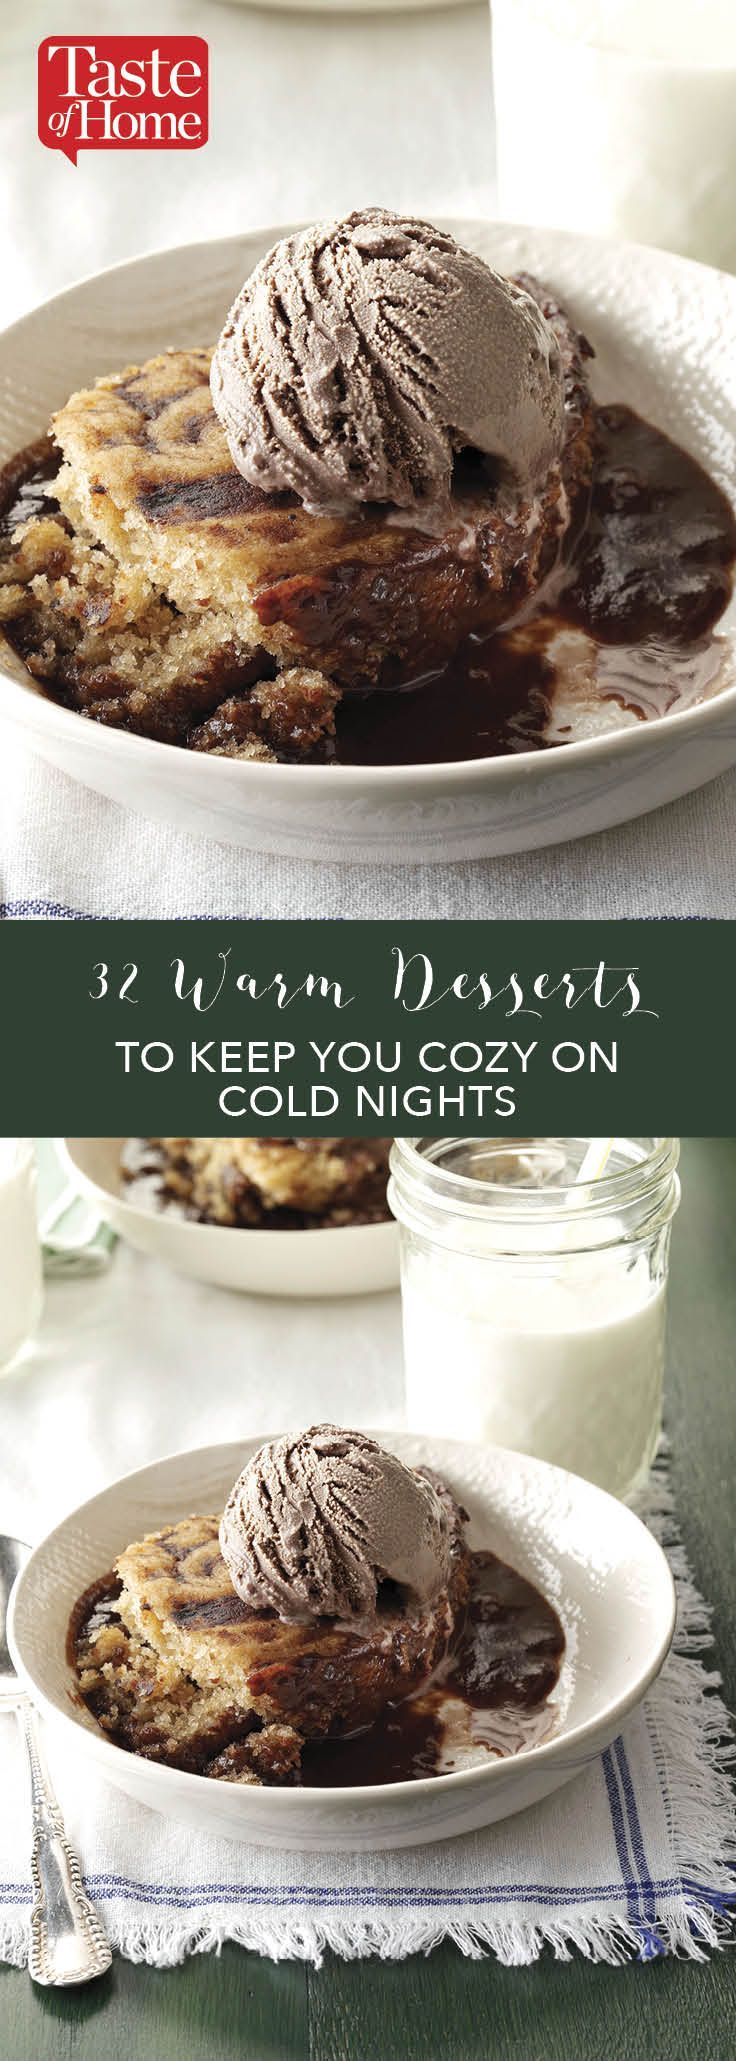 14 desserts Winter warm ideas